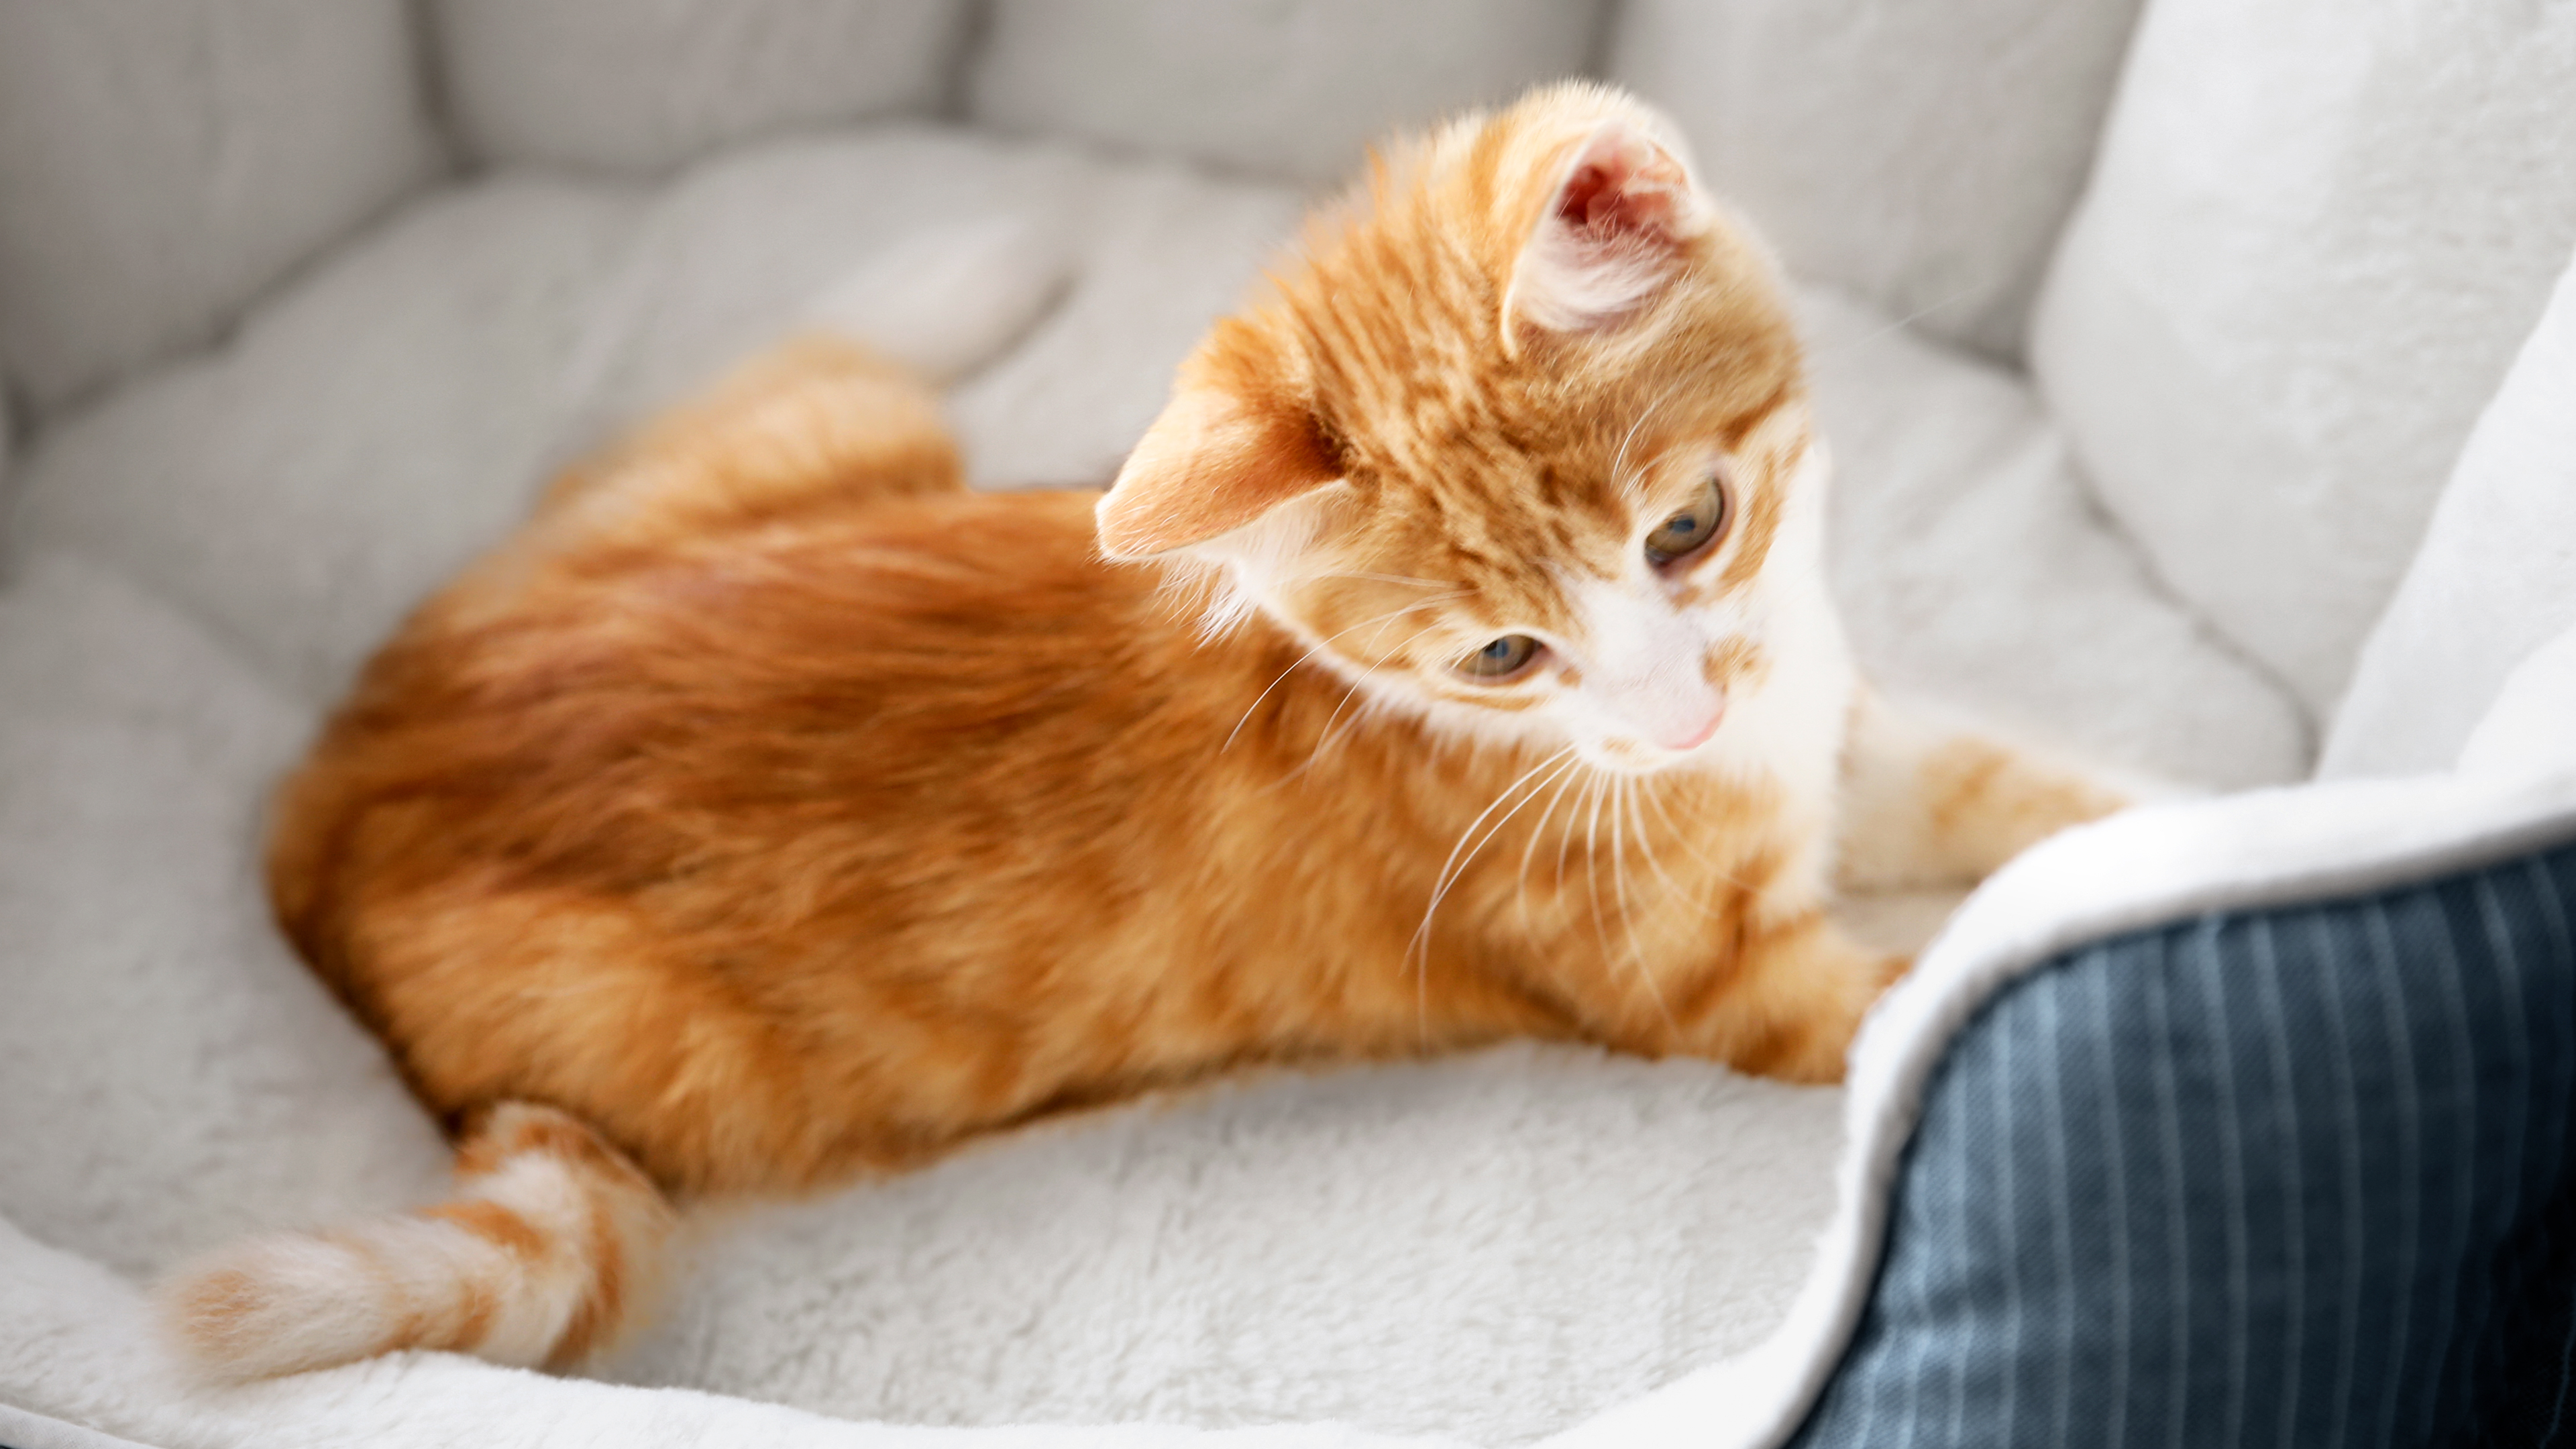 Kitten sitting in a cat bed